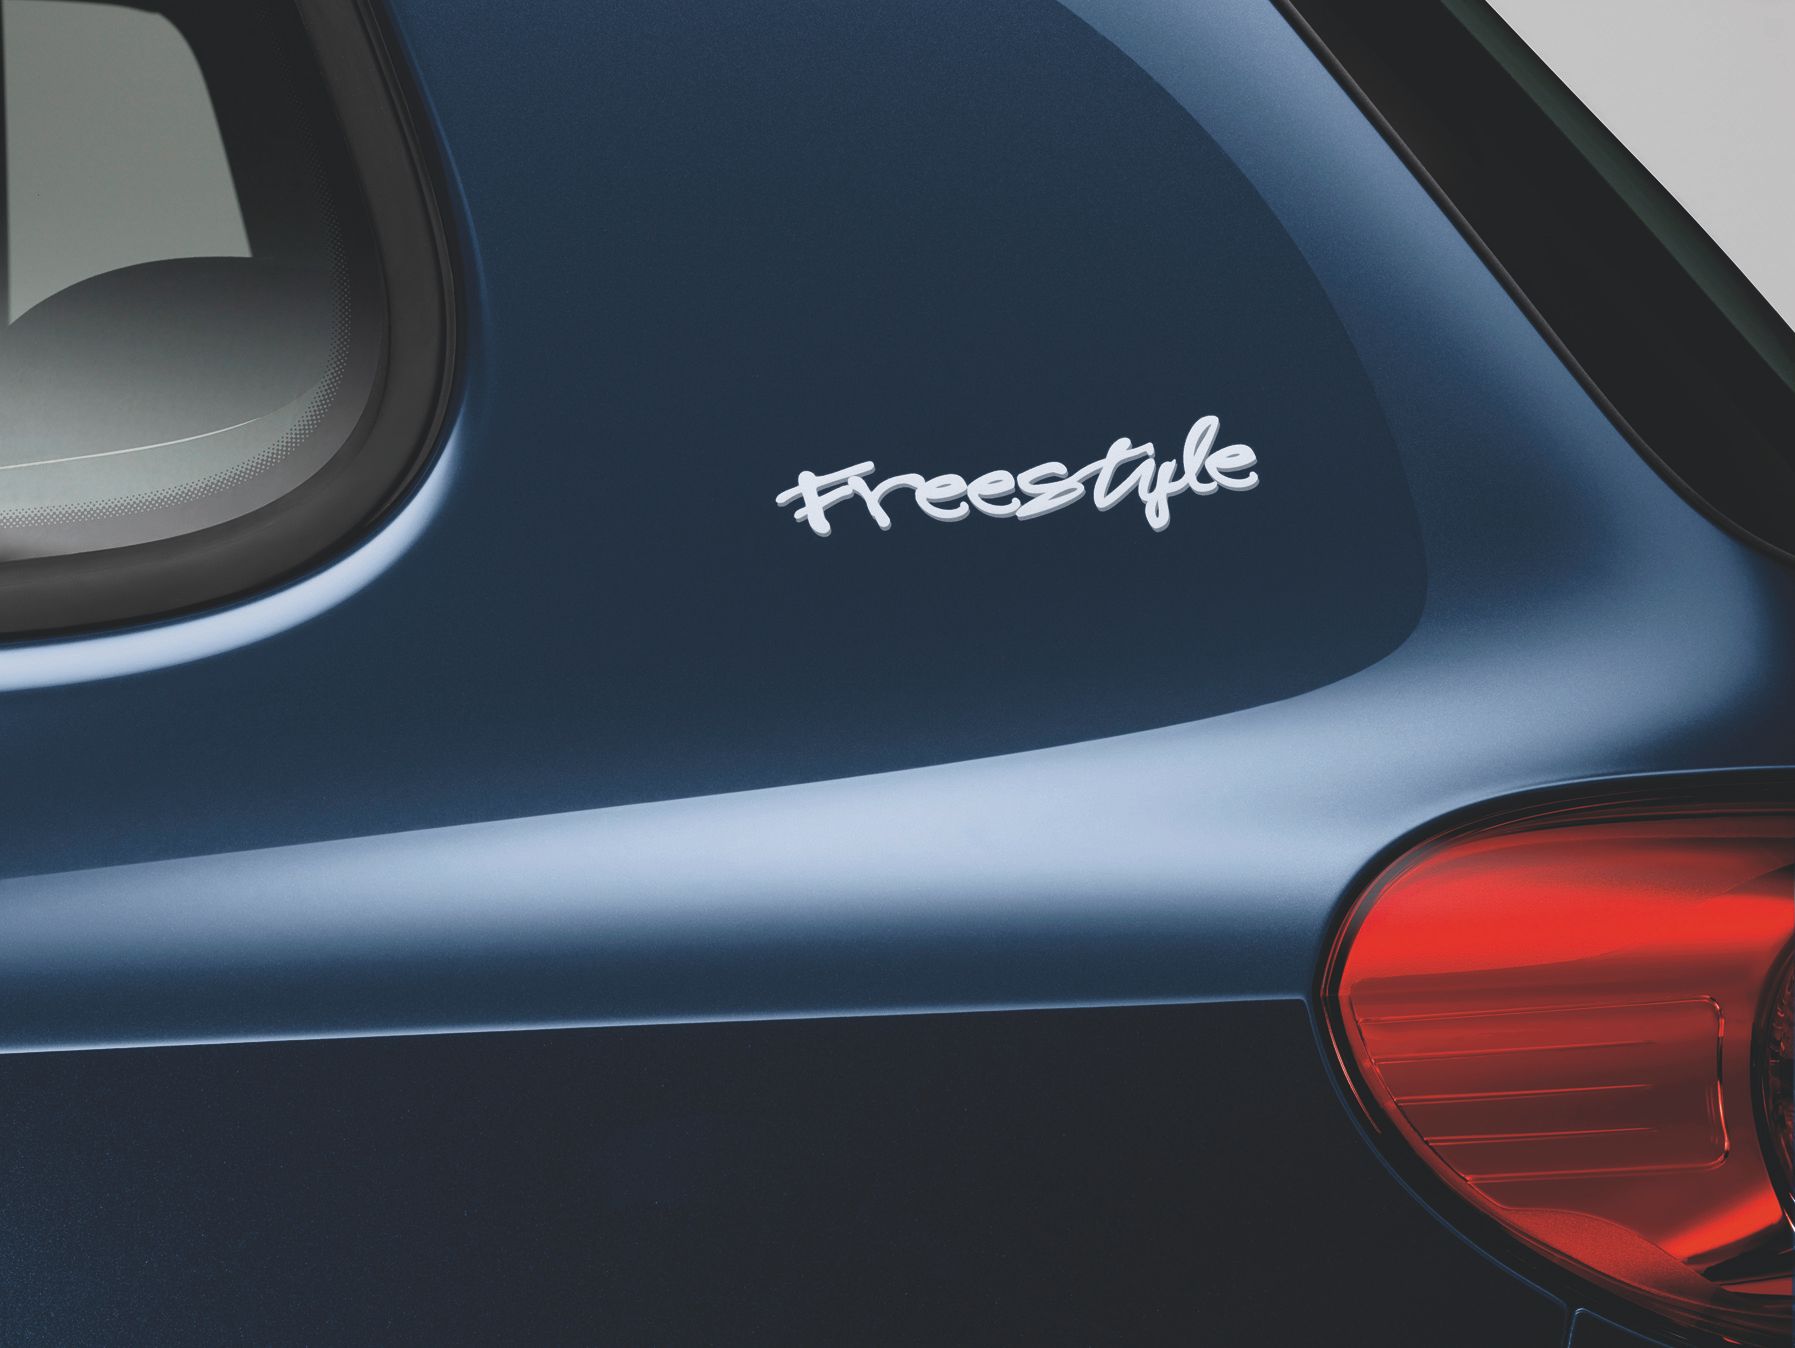 2010 Volkswagen Tiguan Freestyle